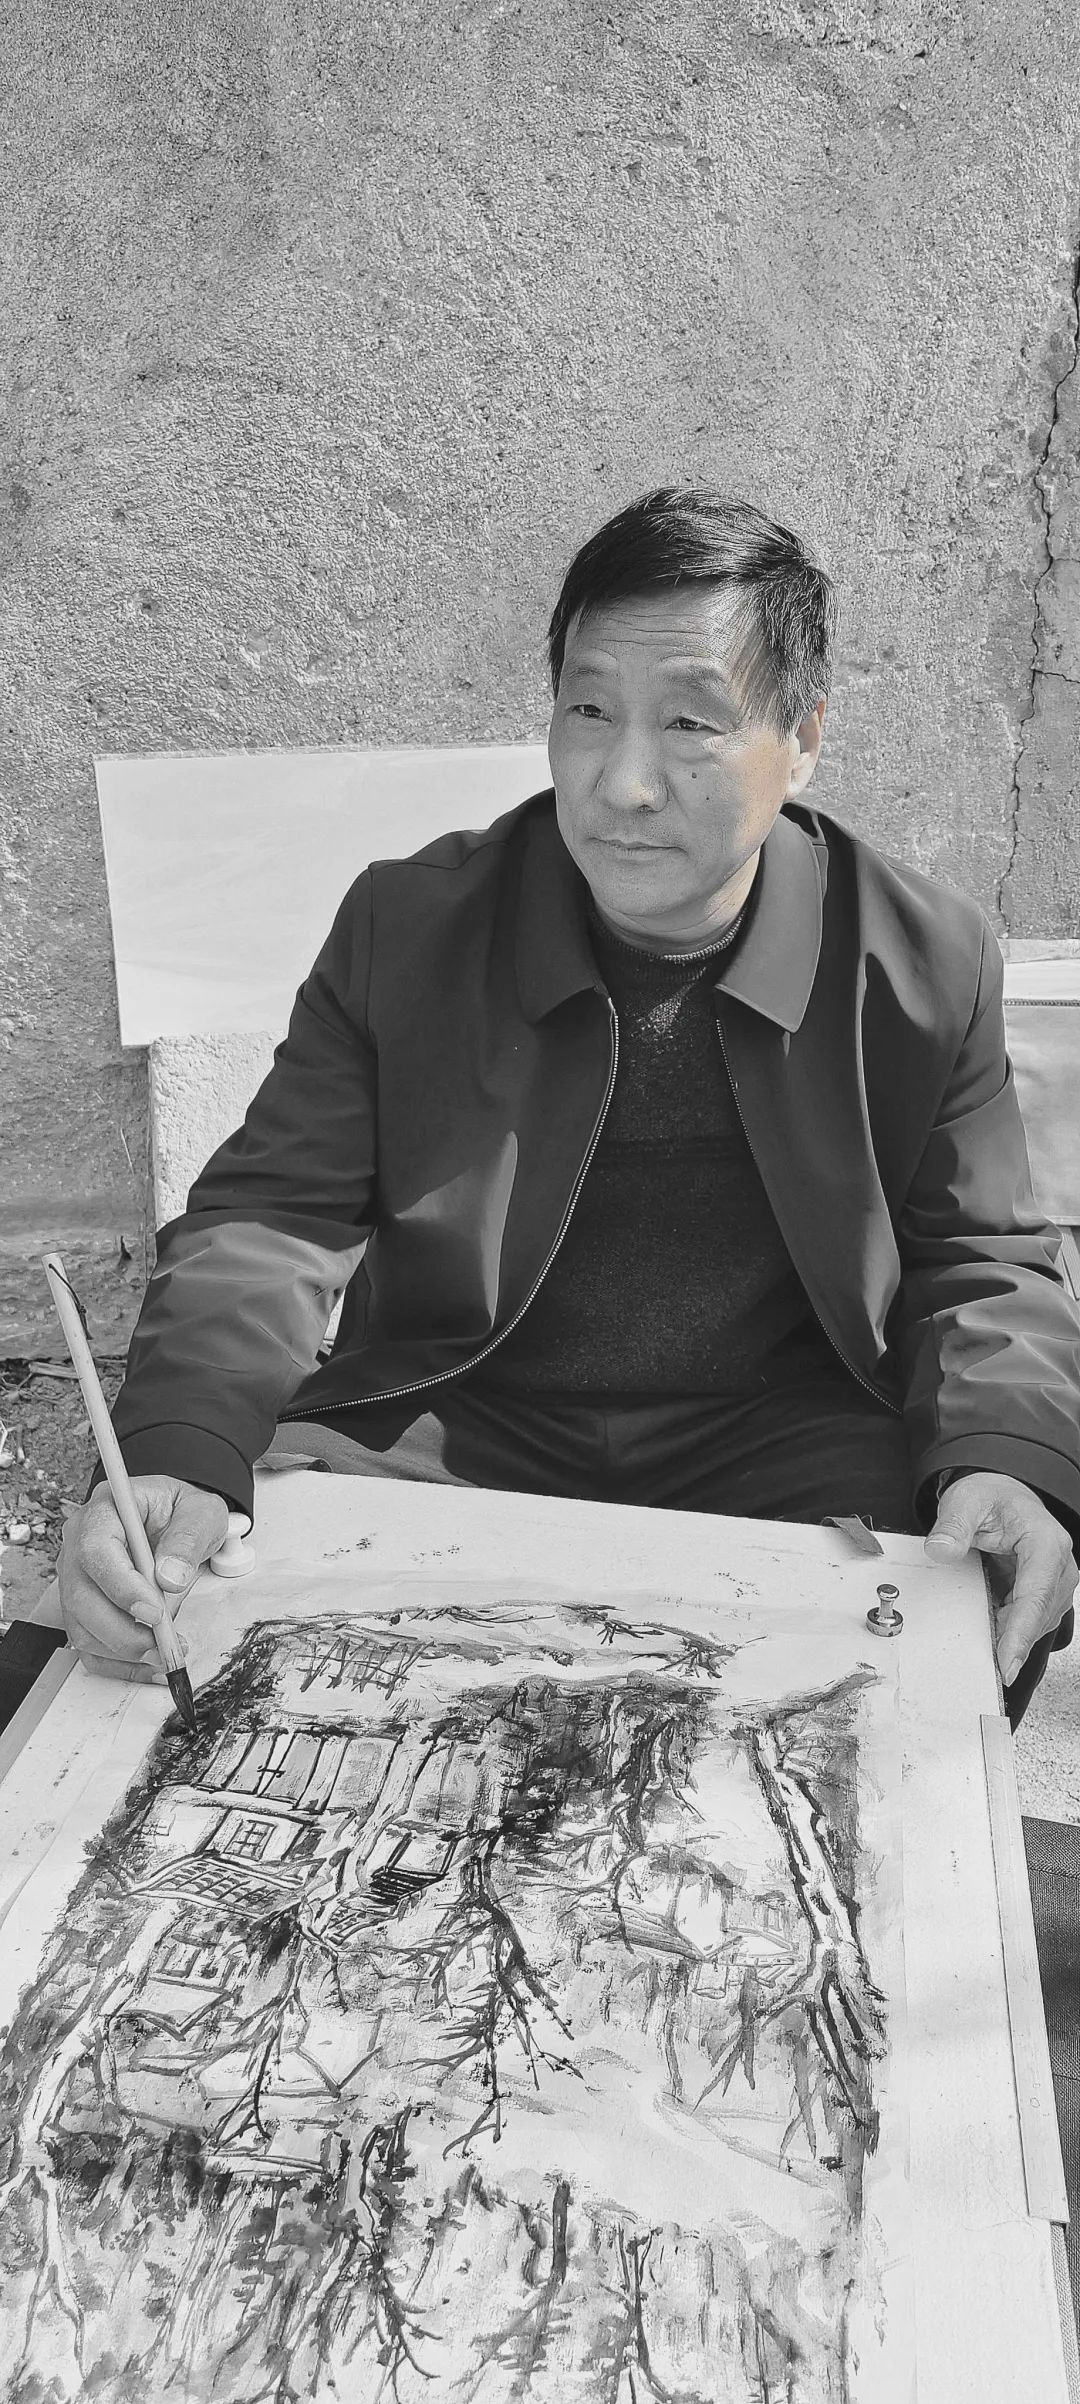 贾荣志写意山水画写生班在淄博成功举办